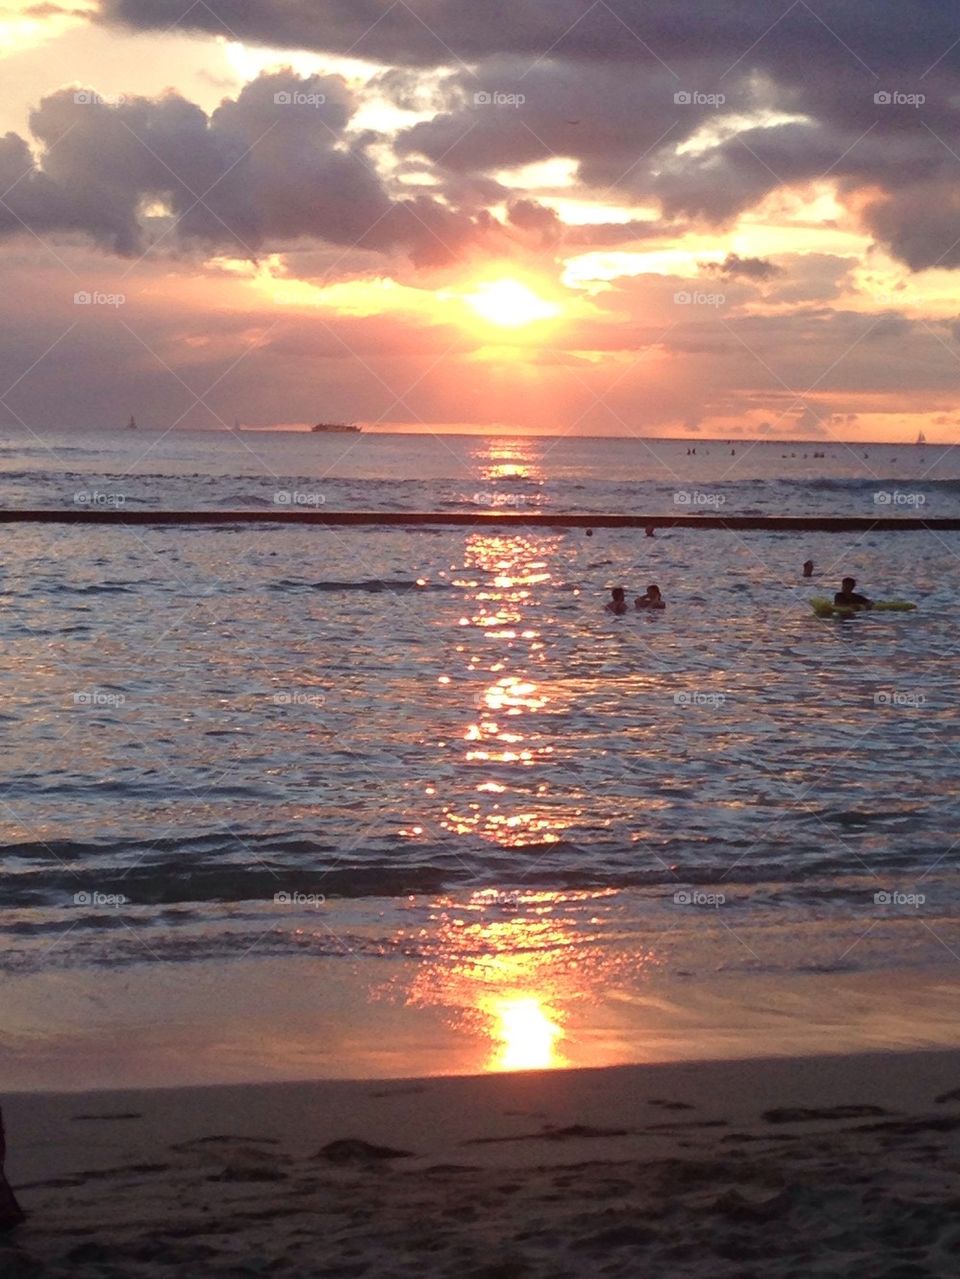 Waikiki beach sunset 